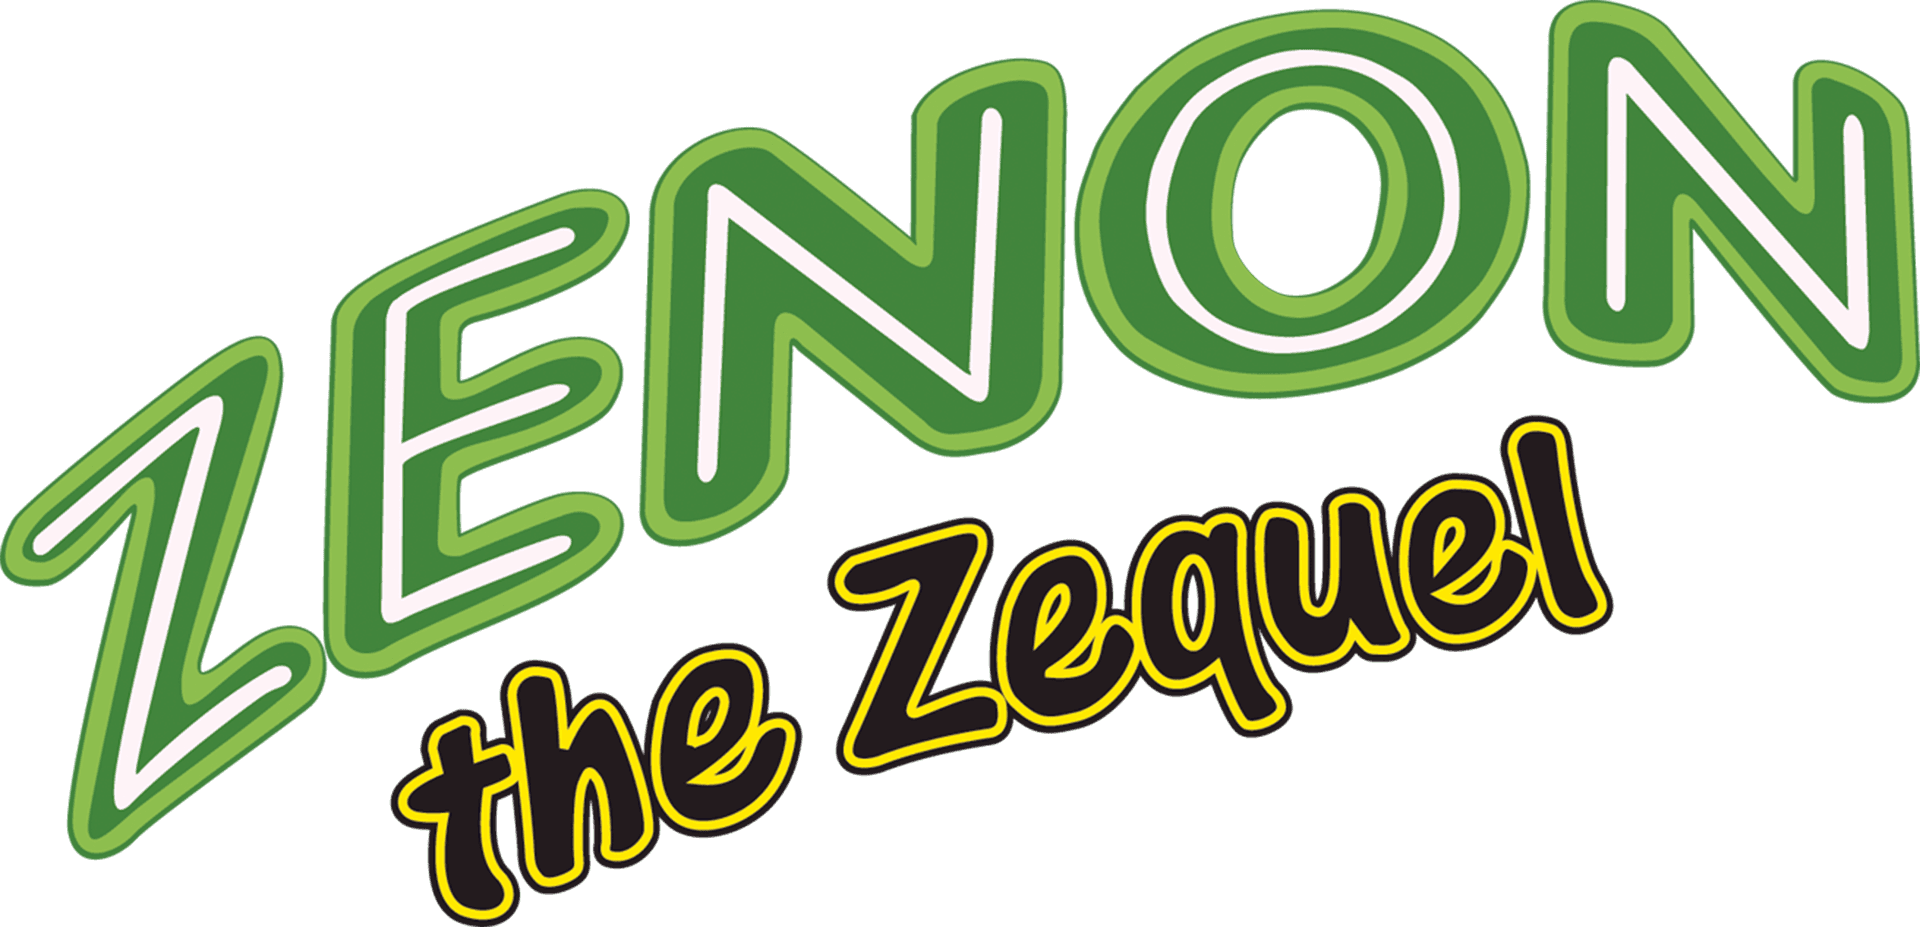 Zenon: The Zequel logo